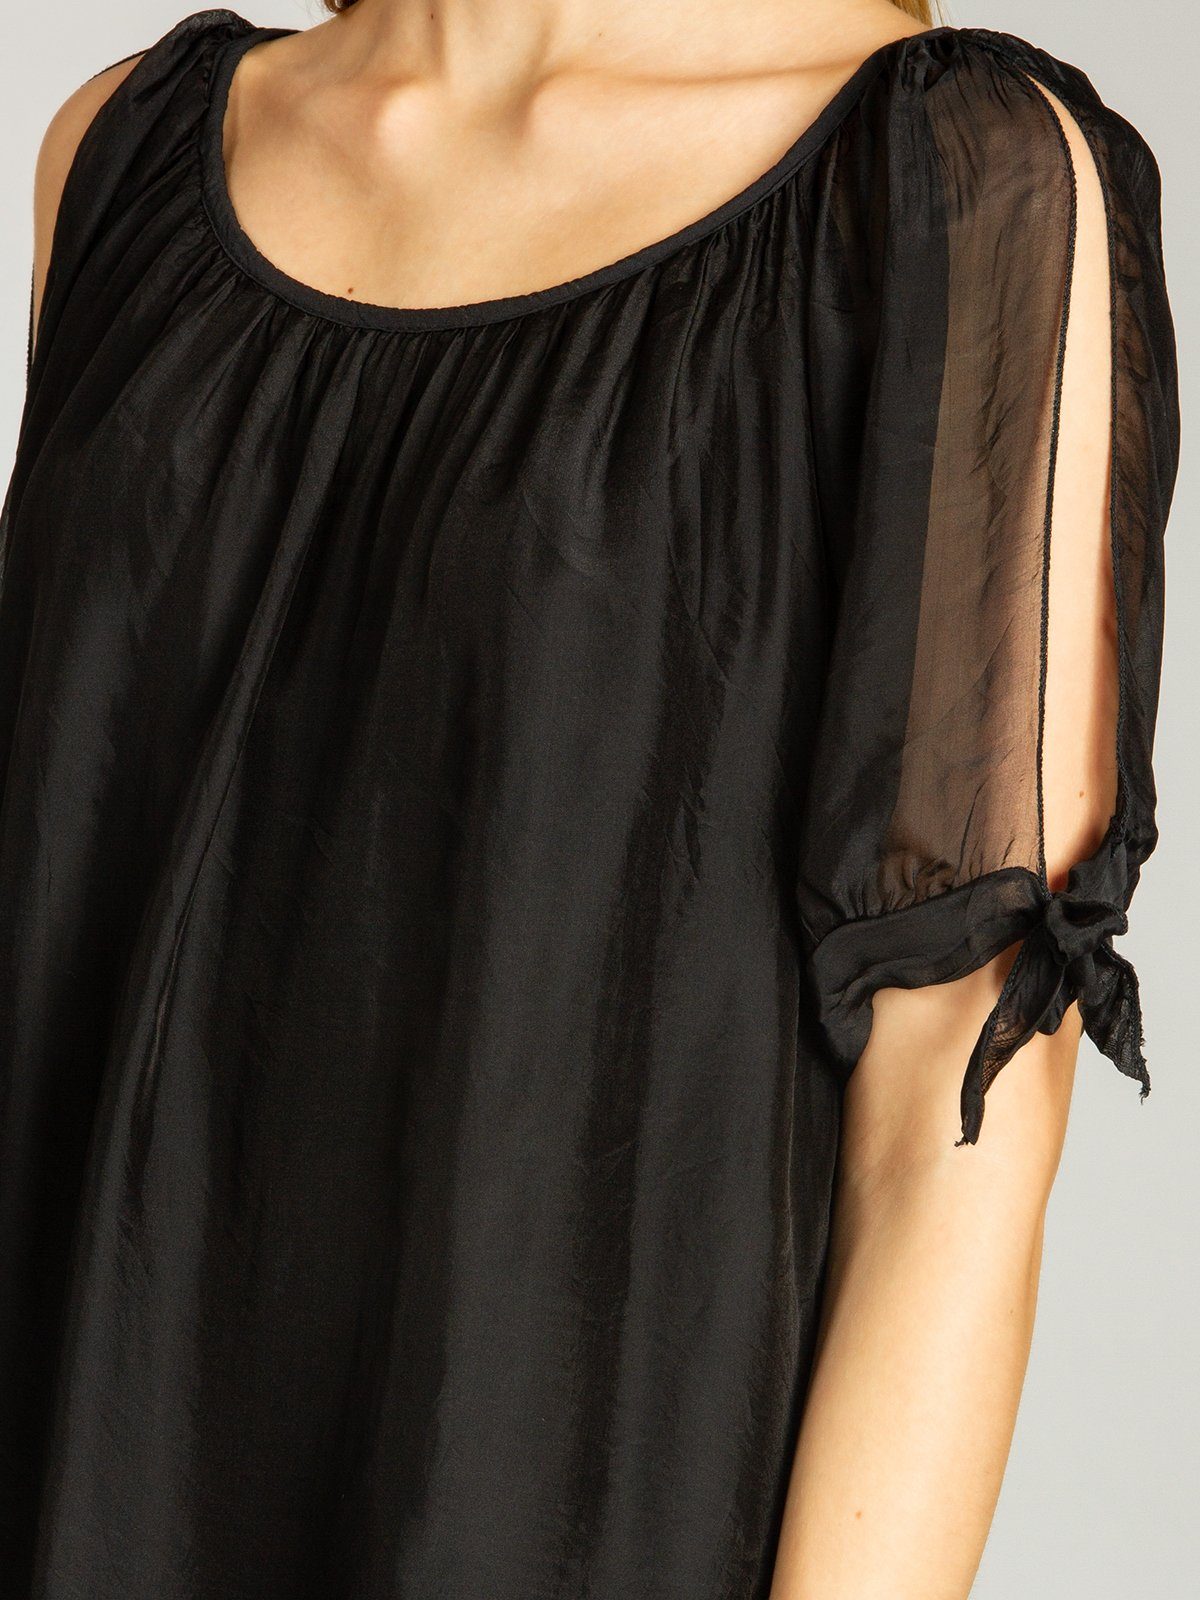 Caspar Shirtbluse BLU020 lange Seidenanteil Bluse mit elegante schwarz leichte Sommer Damen